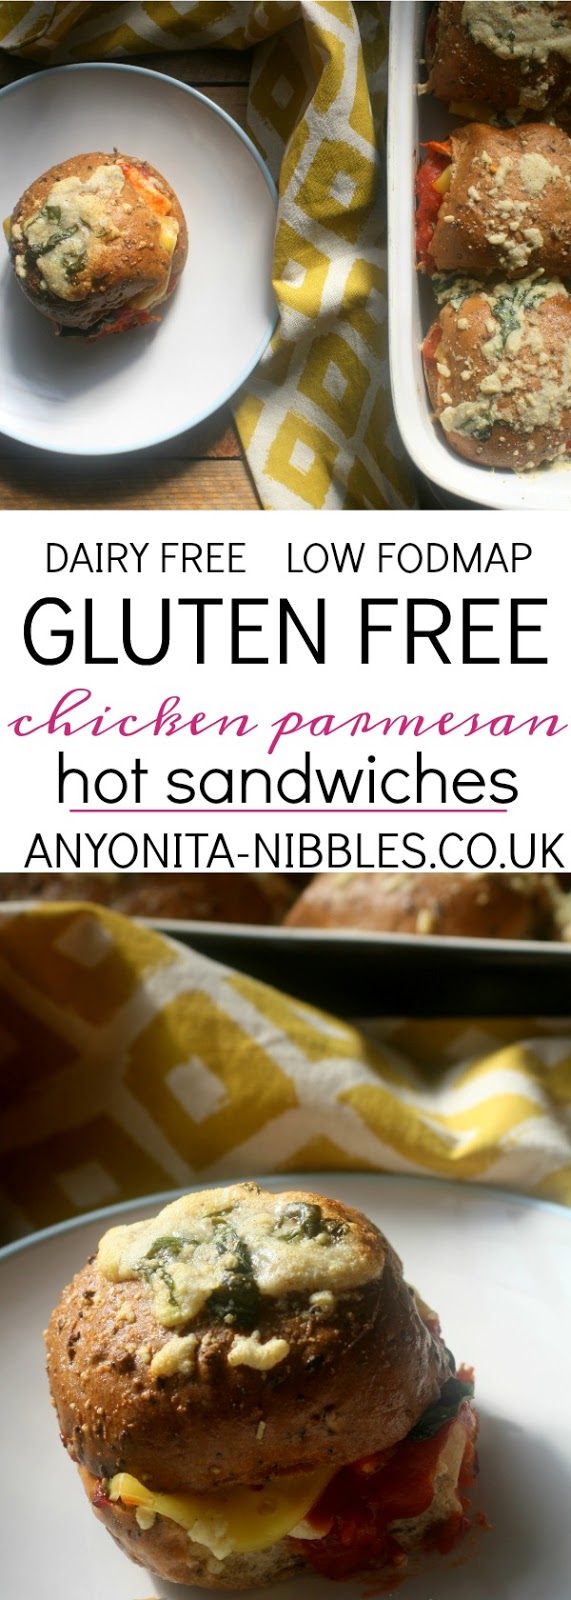 Gluten Free Dairy Free Hot Chicken Parmesan Sandwiches Low FODMAP Friendly